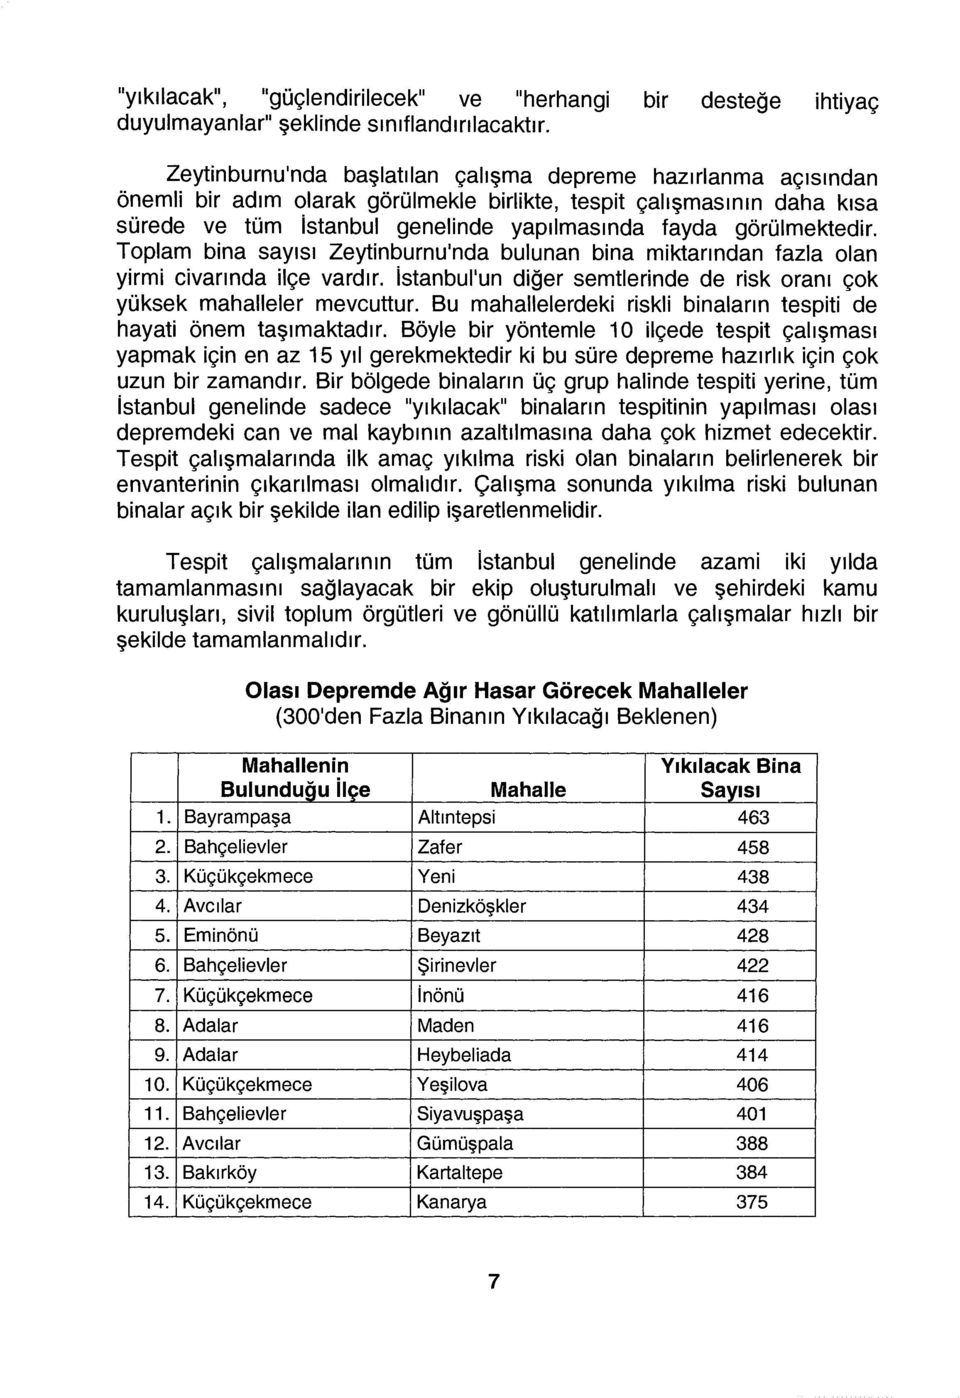 görülmektedir. Toplam bina sayısı Zeytinburnu'nda bulunan bina miktarından fazla olan yirmi civarında ilçe vardır. istanbul'un diğer semtlerinde de risk oranı çok yüksek mahalleler mevcuttur.